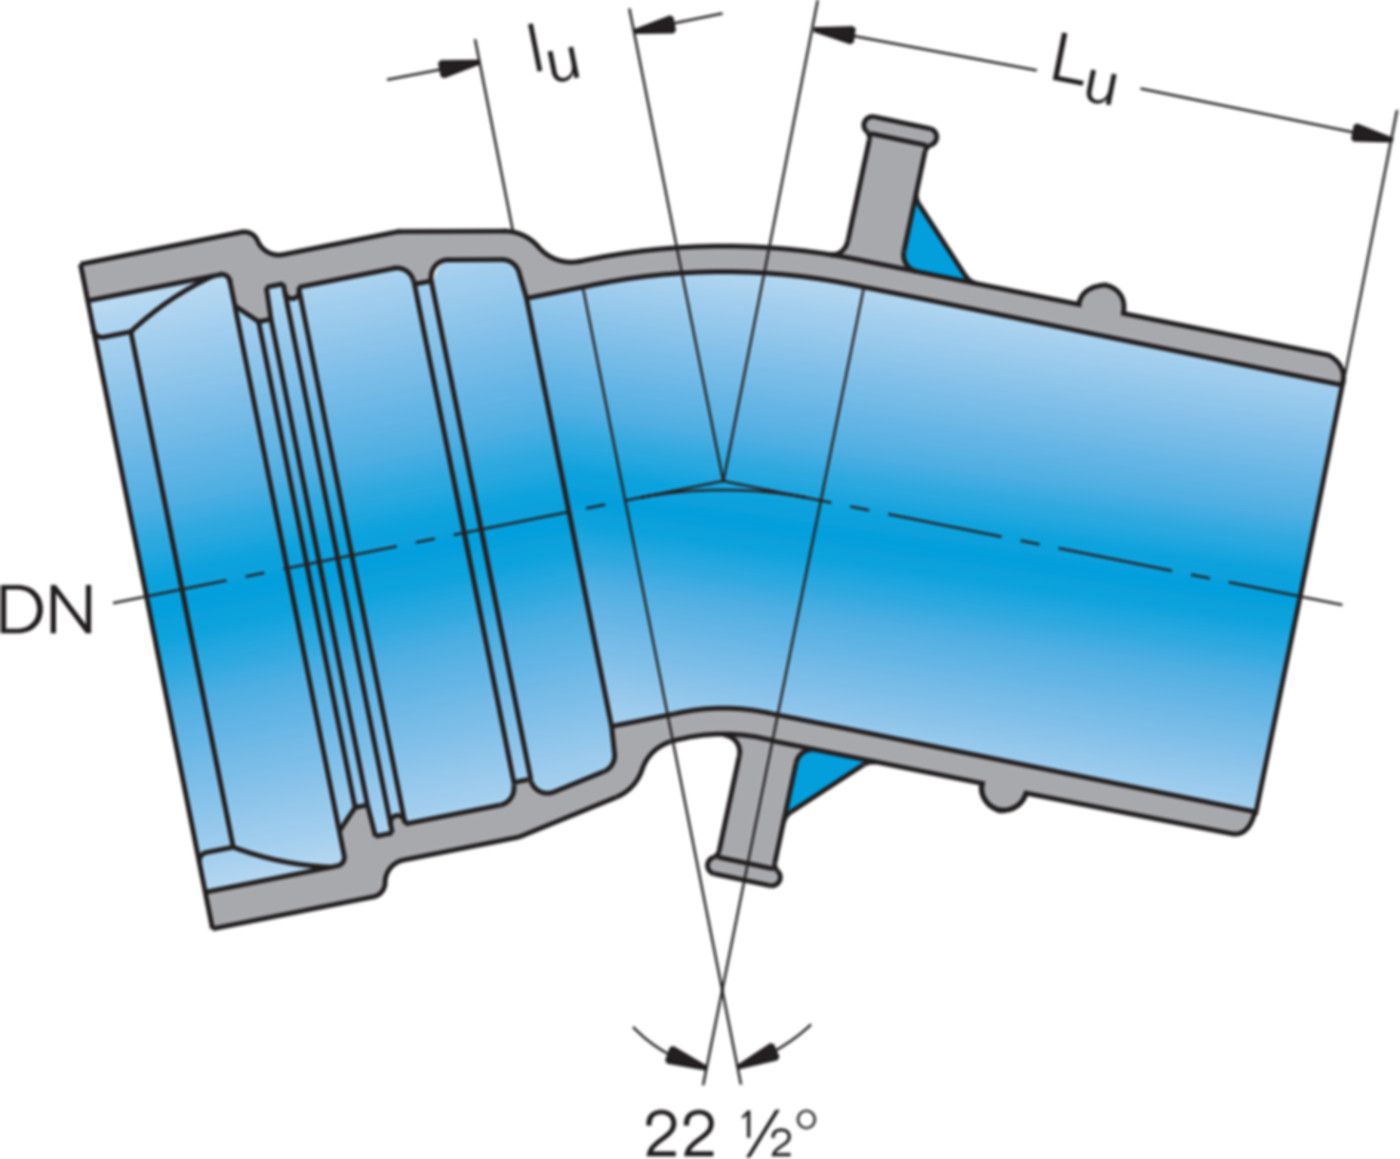 1-Muffe-Bogen MK 22° System BLS DN 100 - Frischhut Steckmuffenformstücke